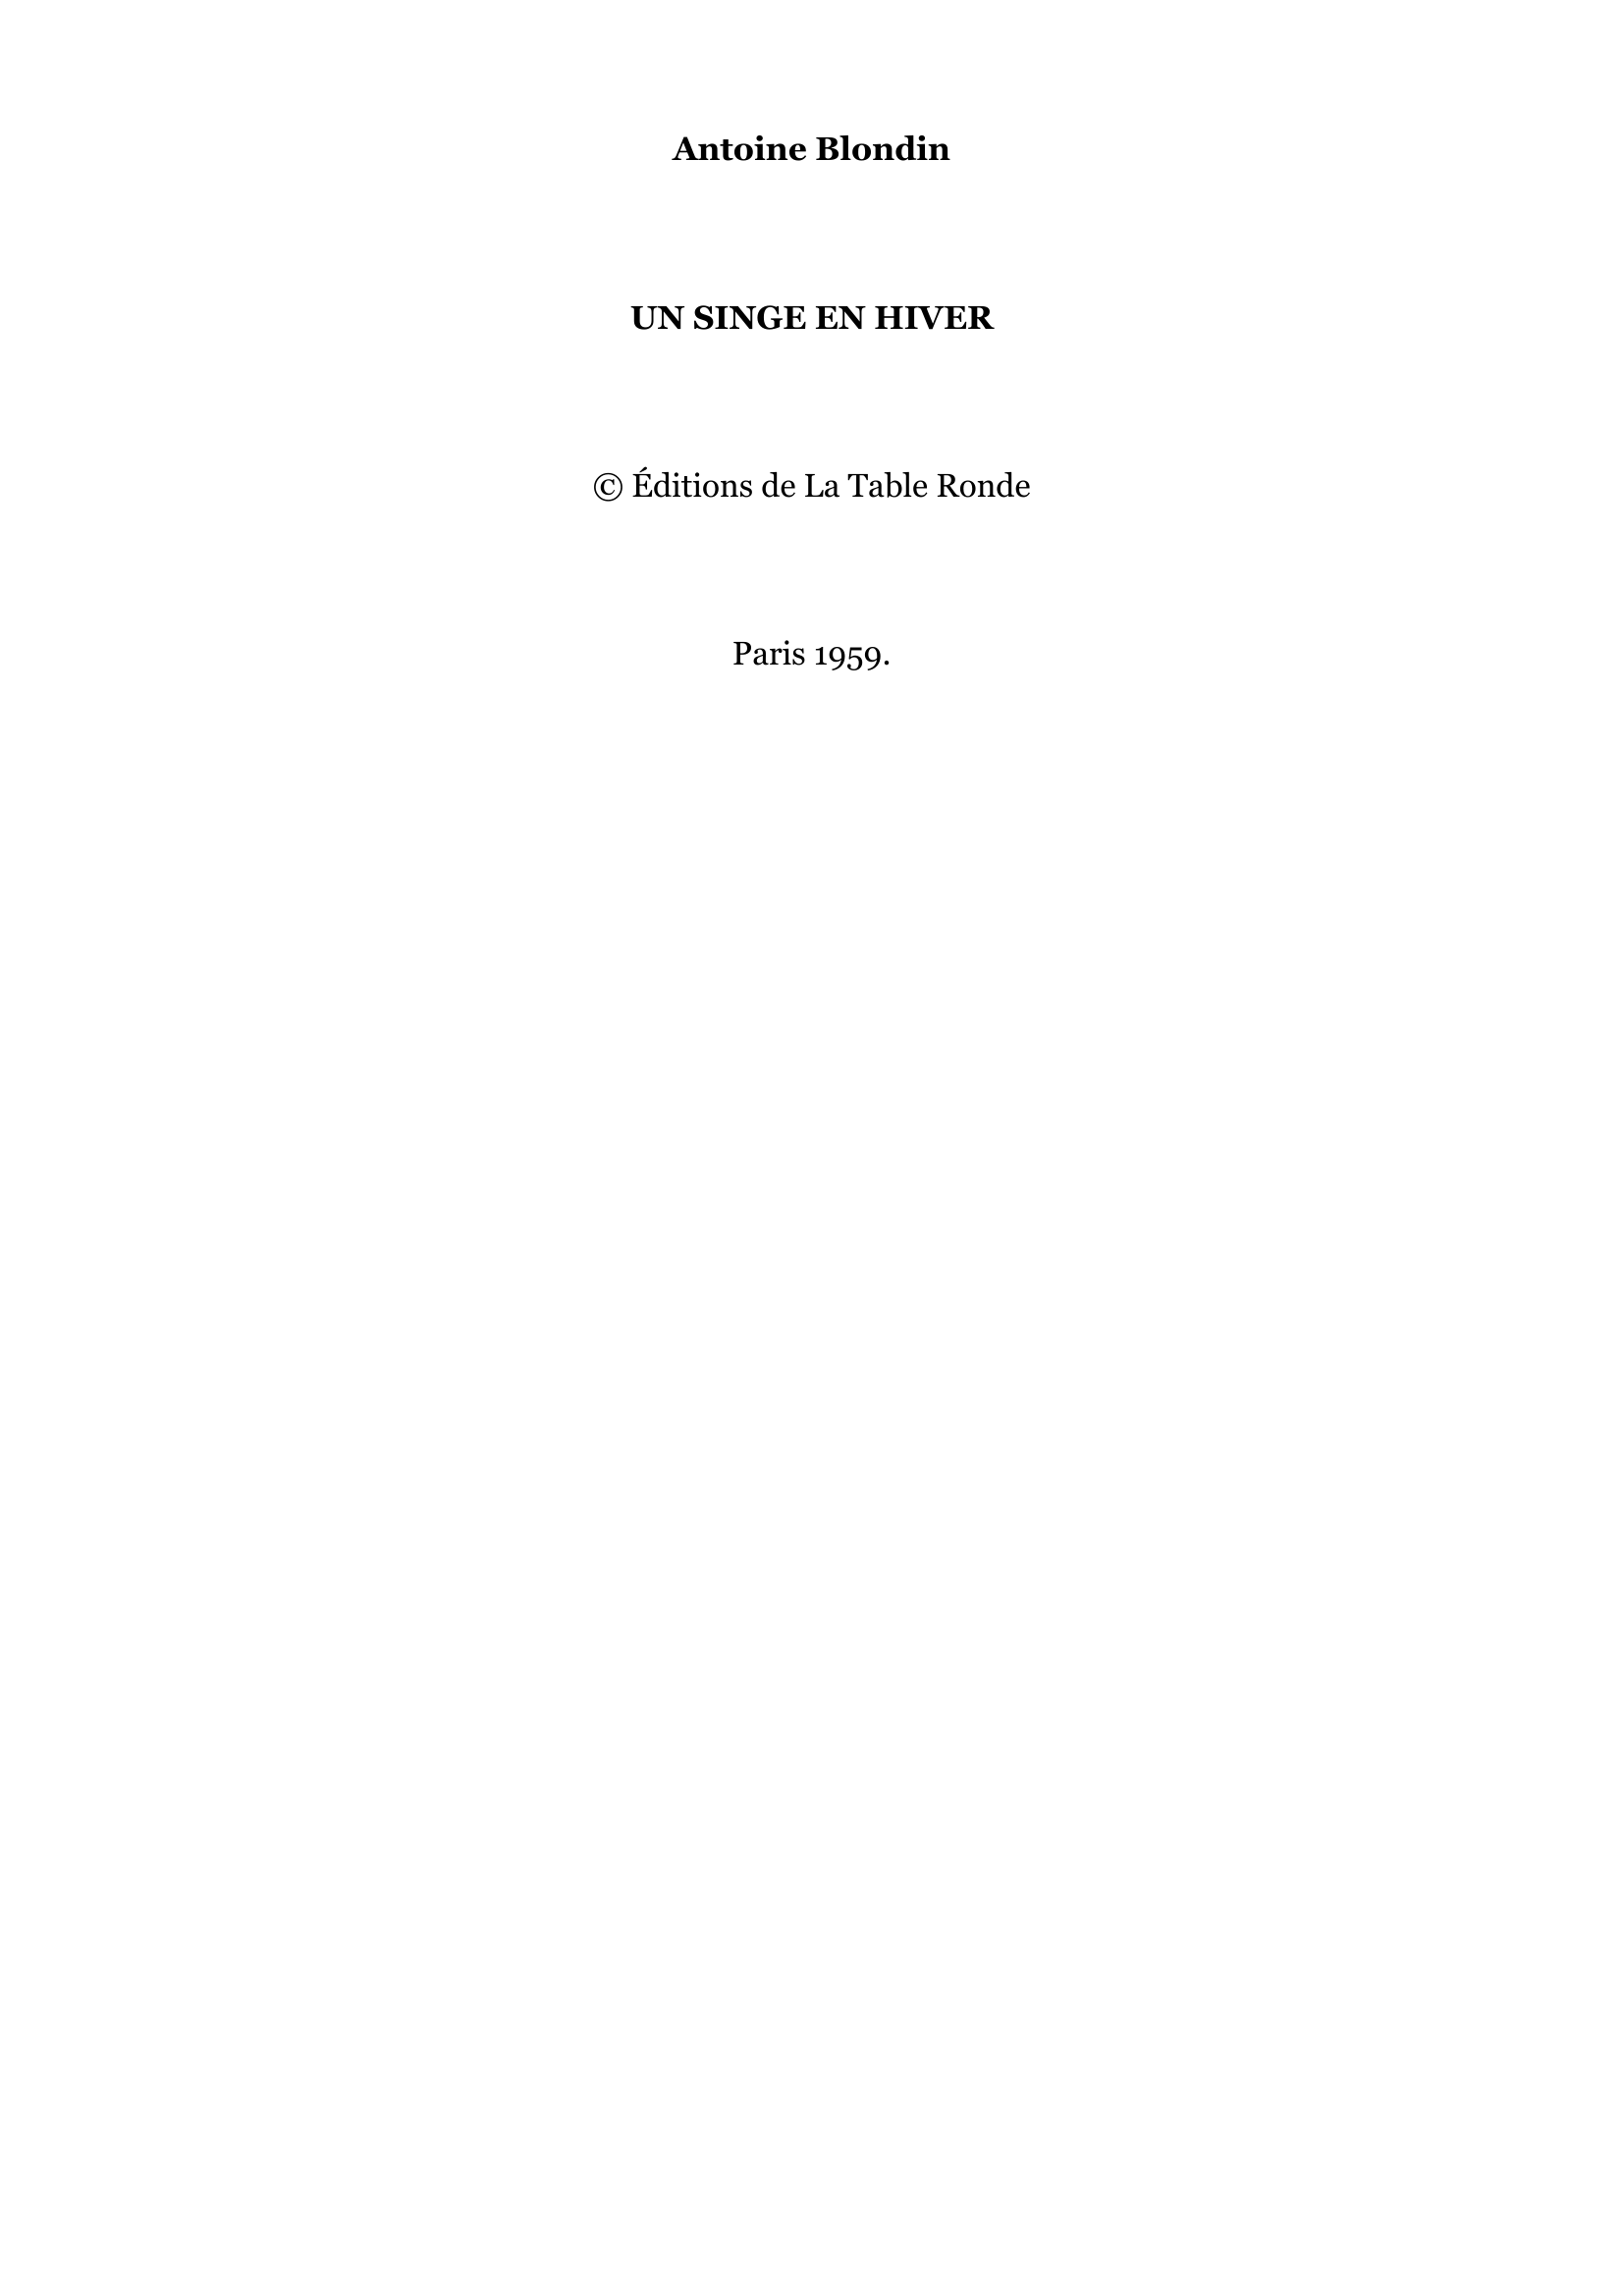 Prévisualisation du document Un Singe en Hiver
Antoine Blondin
La Table Ronde (2011)
Etiquettes:

Littérature française

n morceau de bravoure du père Blondin.